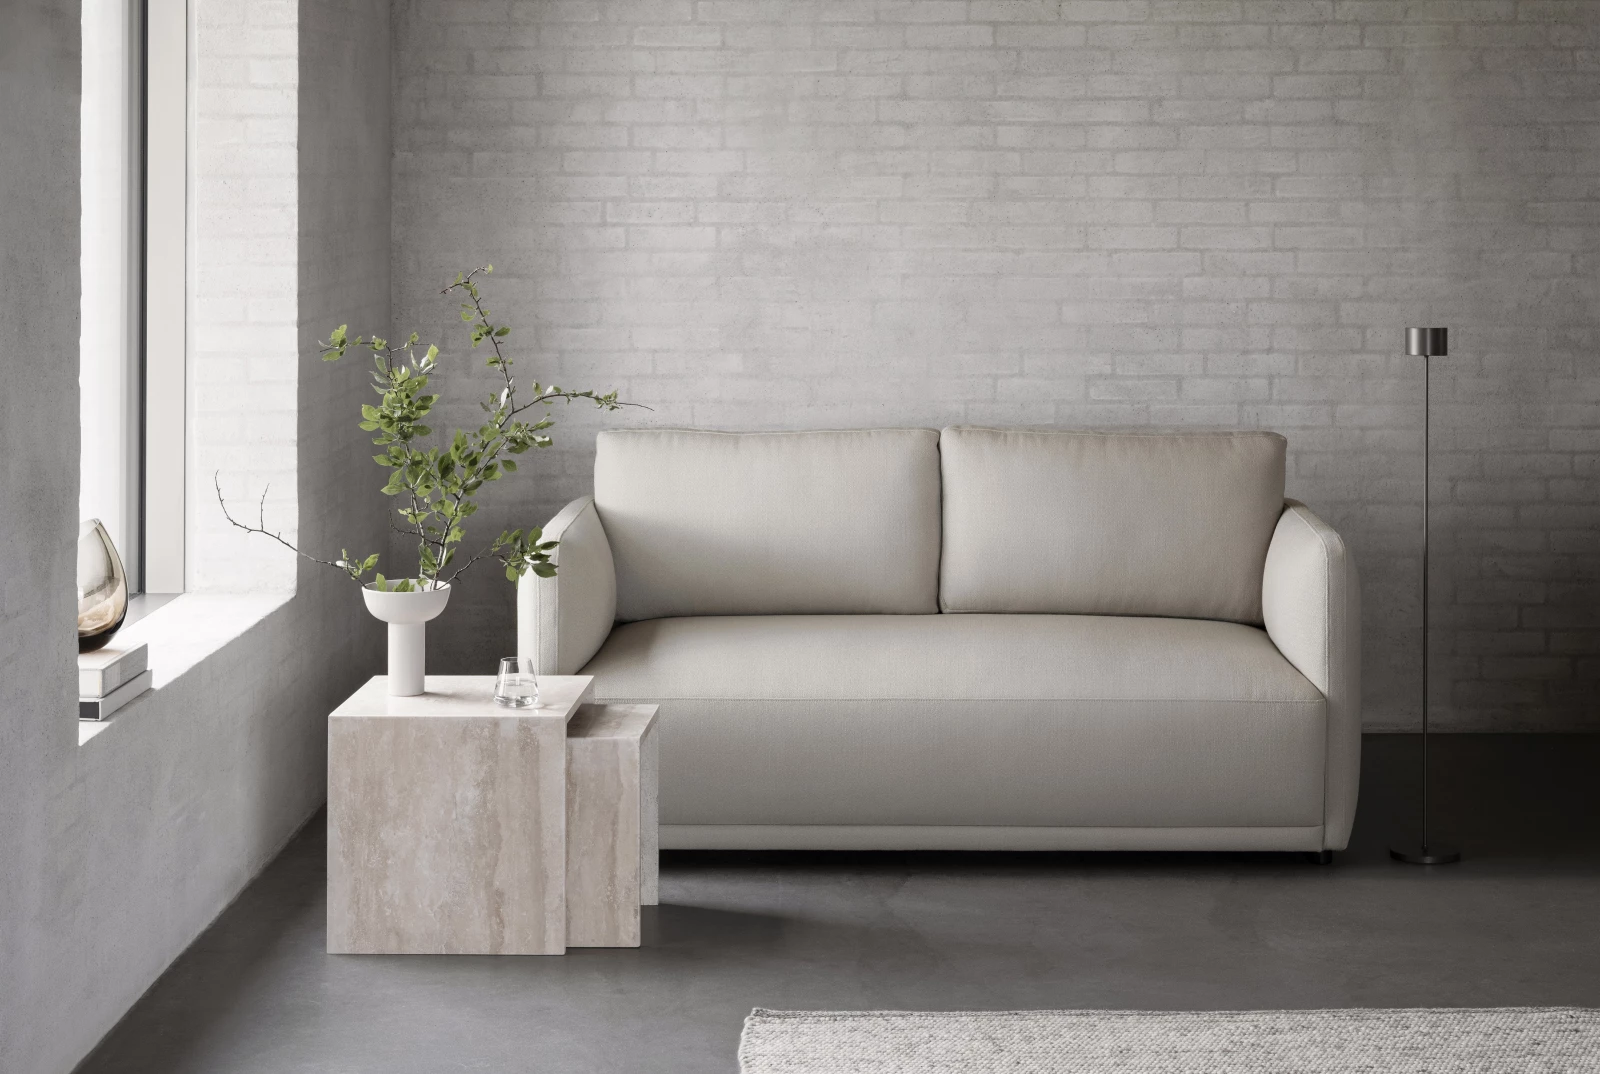 LUA indoor sofa series